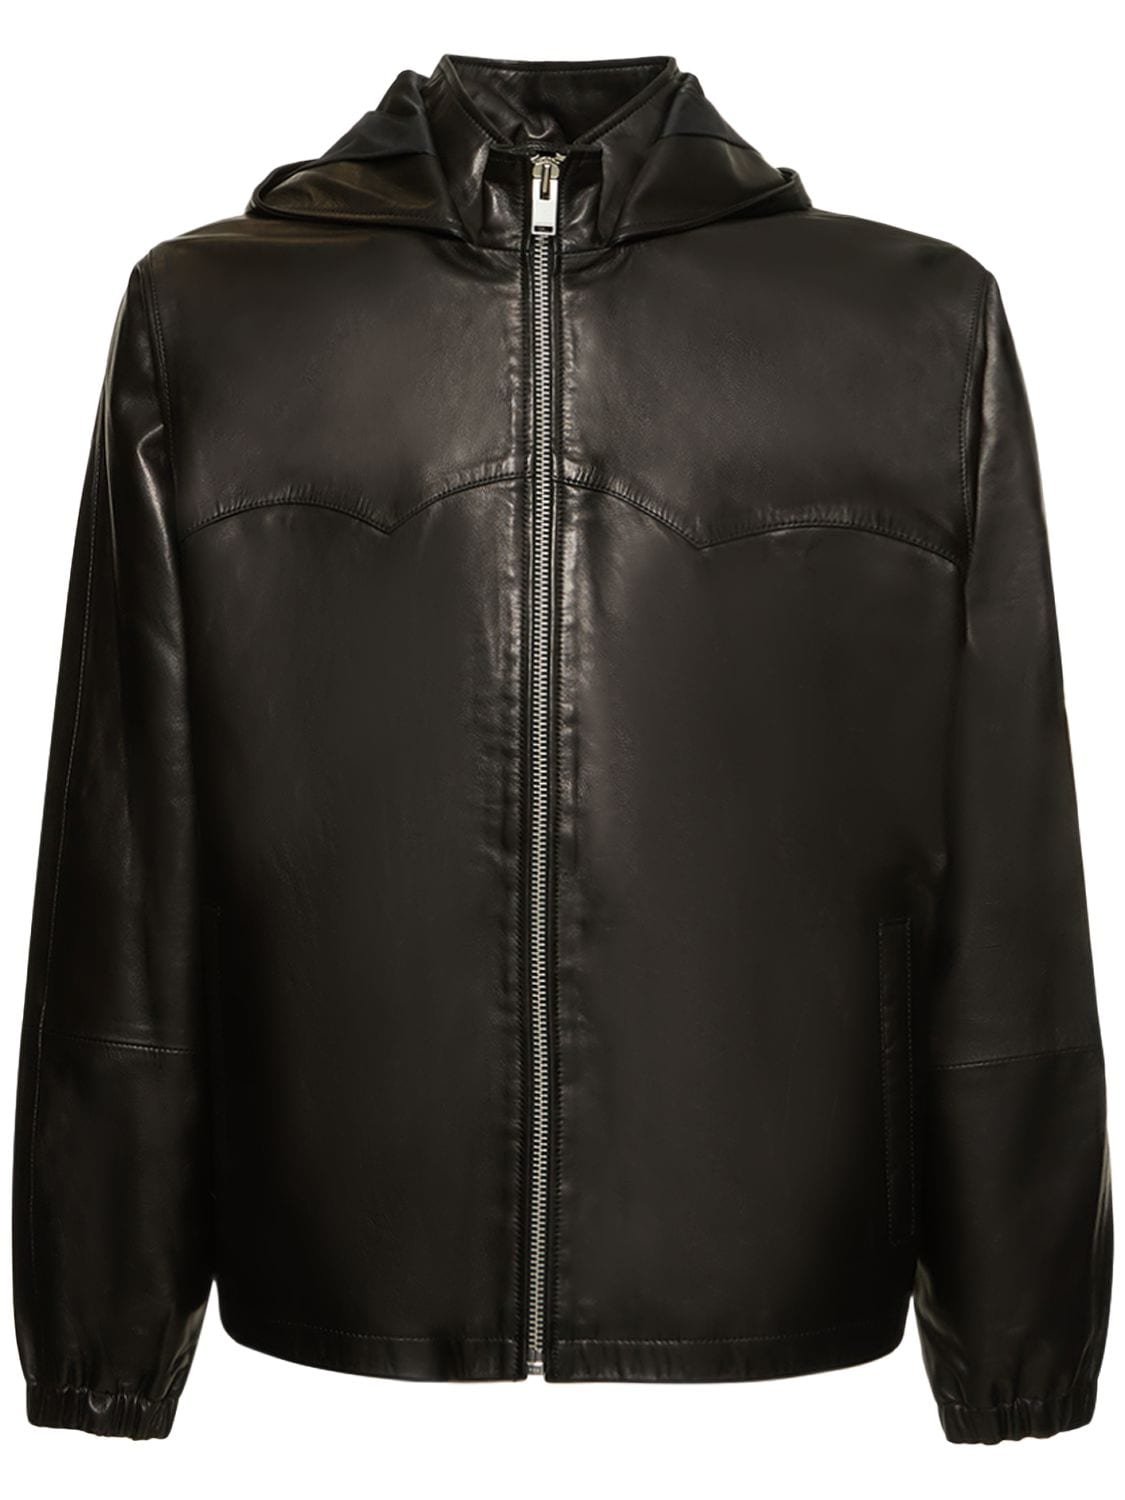 FLANEUR HOMME Windbraker Jacket W/leather Details